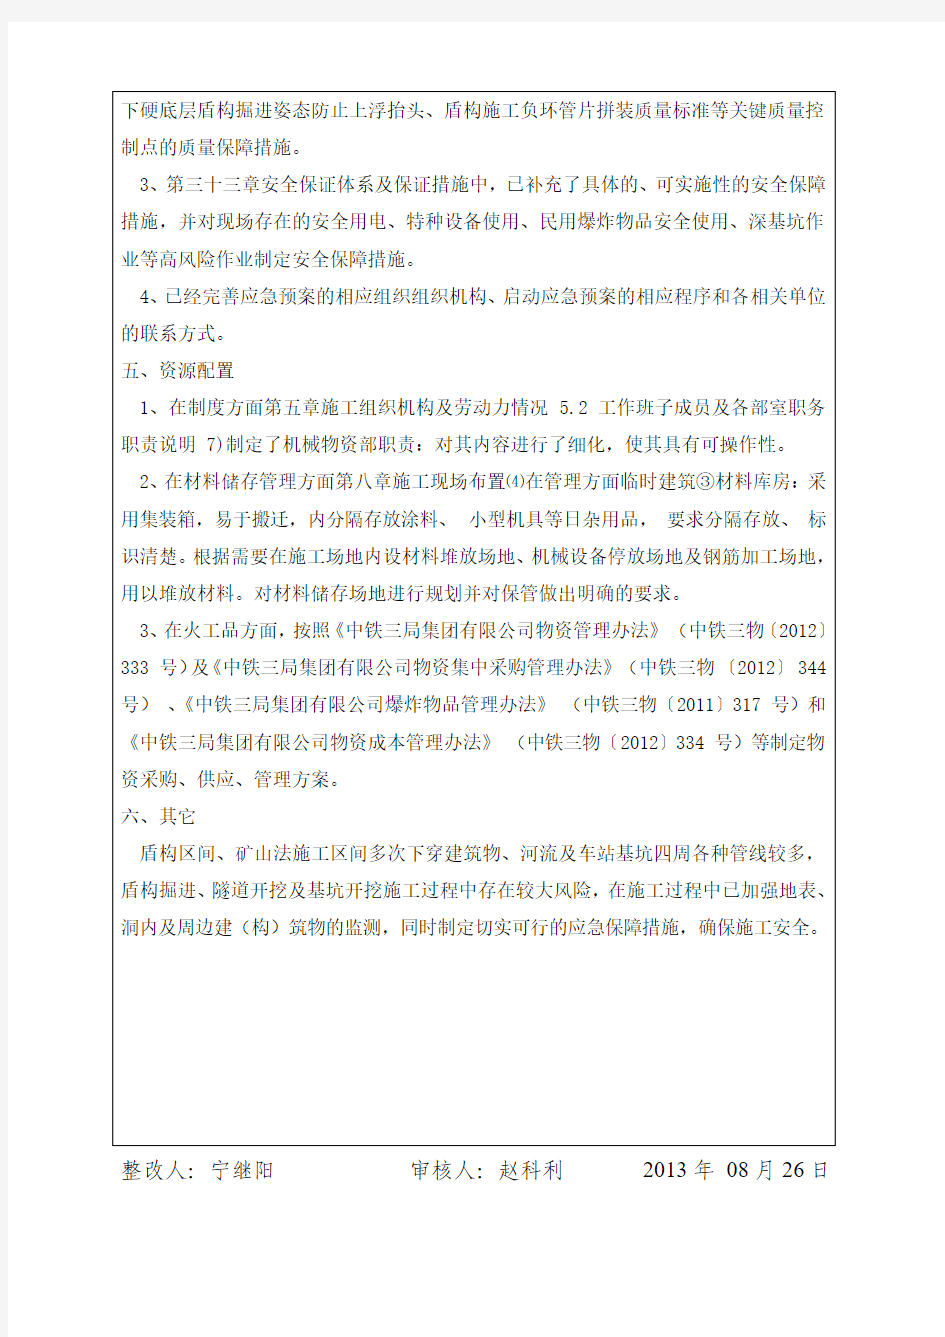 深圳地铁11号线11304标实施性施工组织设计方案审查意见回复单